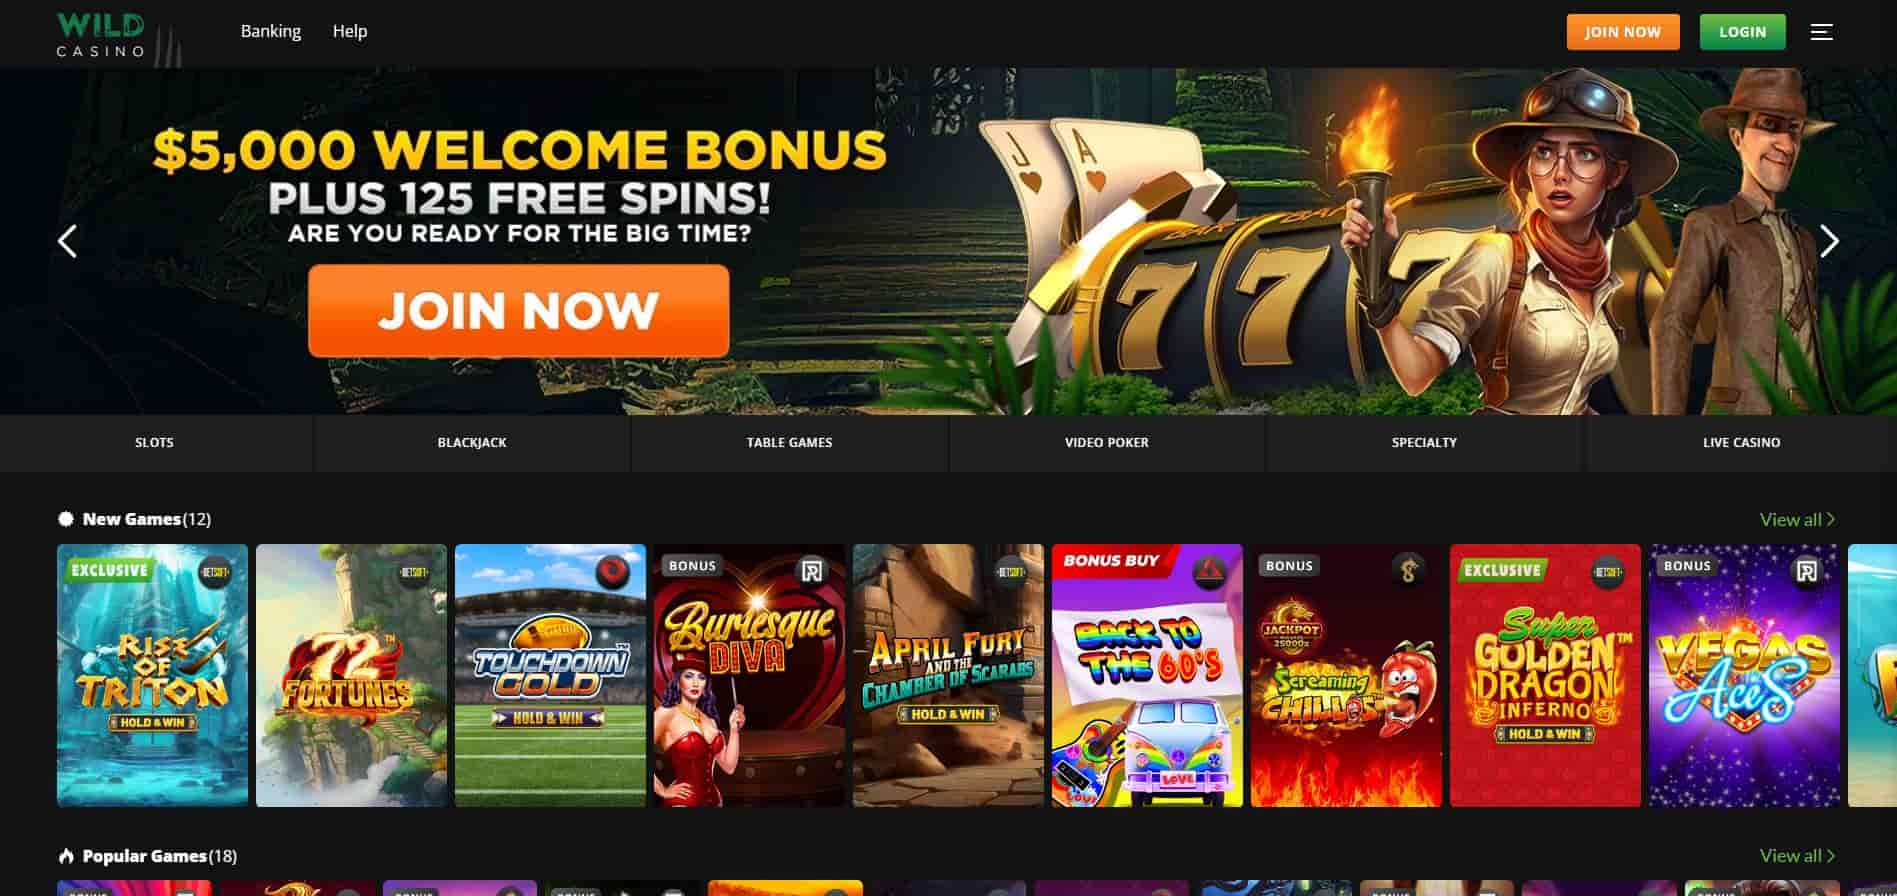 wild casino homepage Arizona online gambling